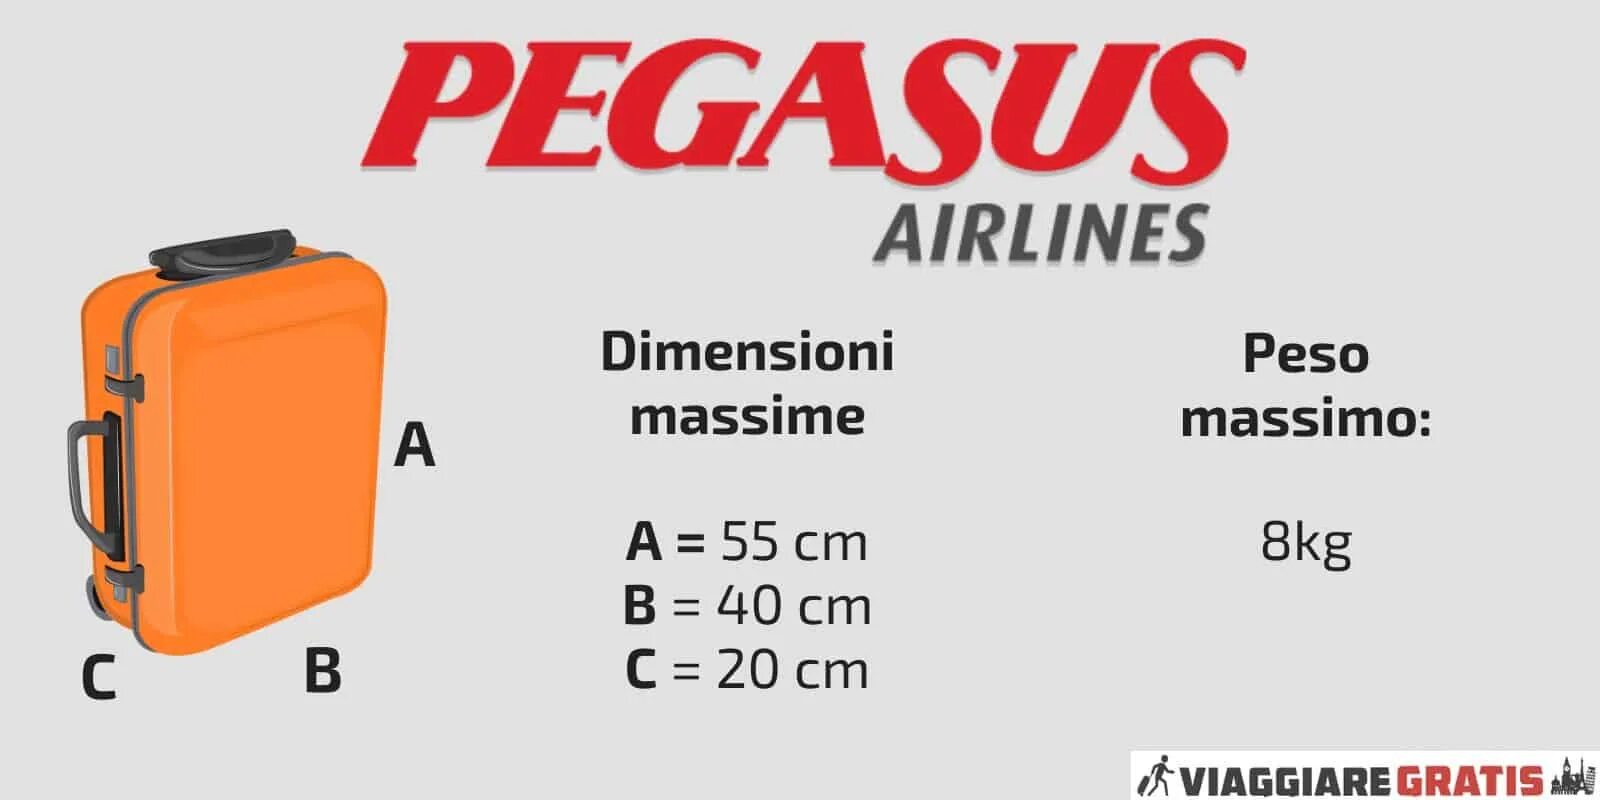 Pegasus ручная кладь габариты. Pegasus Airlines ручная кладь габариты. Pegasus Airlines нормы ручной клади. Габариты багажа Пегасус 20 кг.